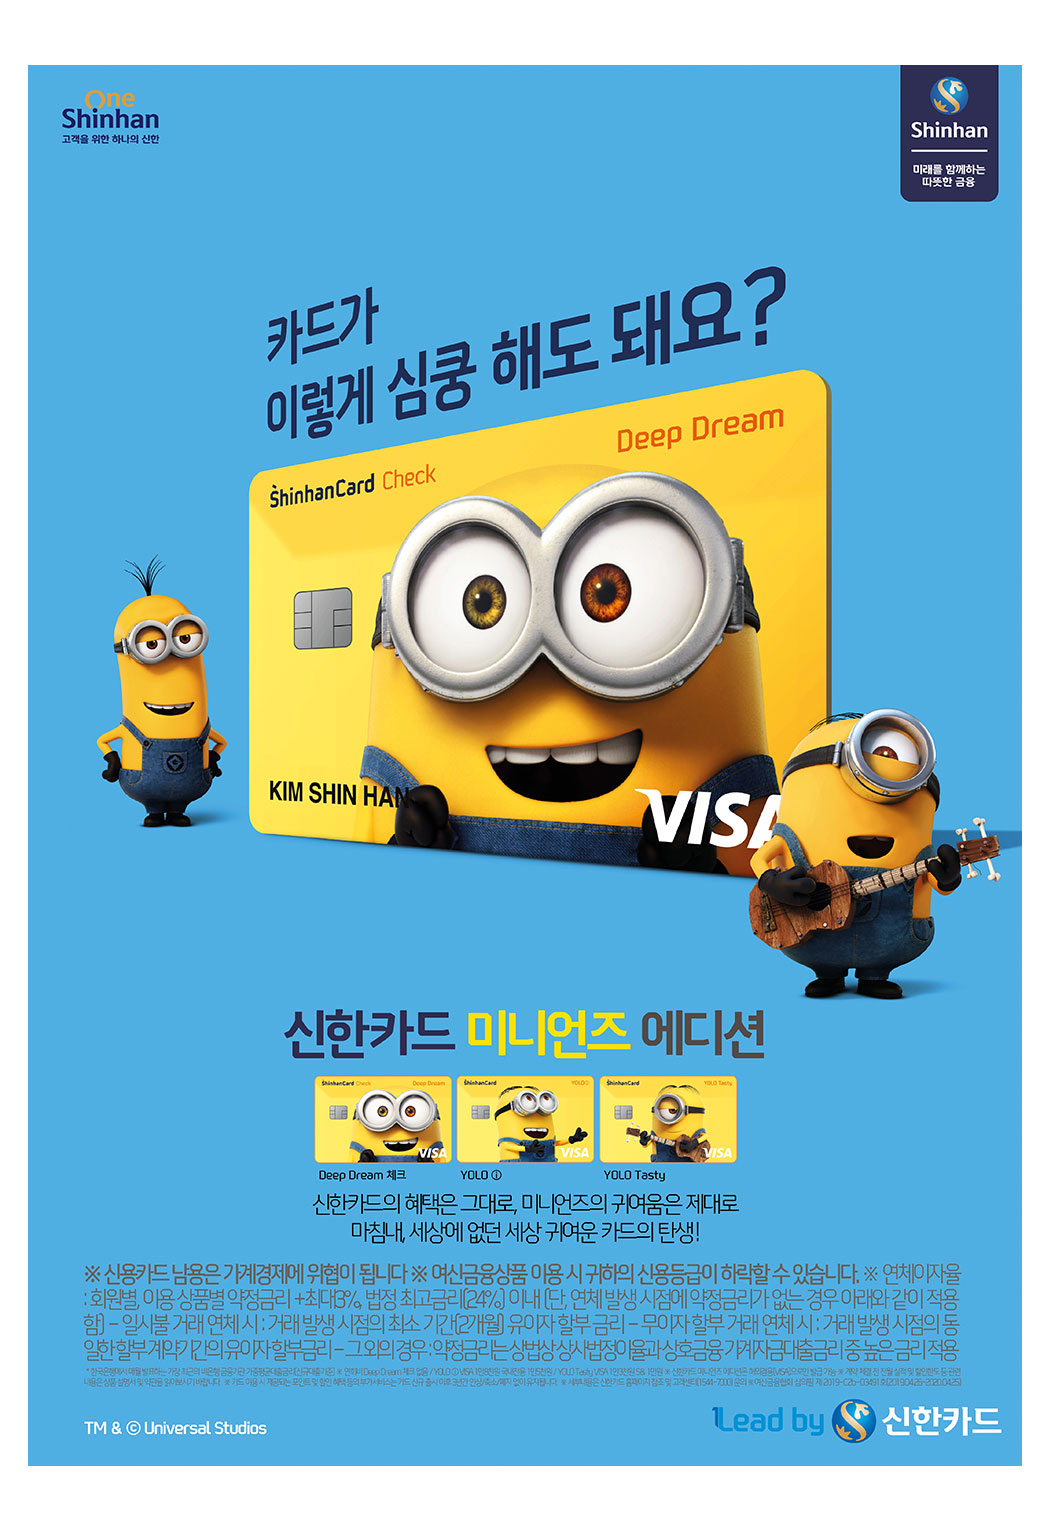 신한카드 미니언즈 에디션 인쇄광고 이미지